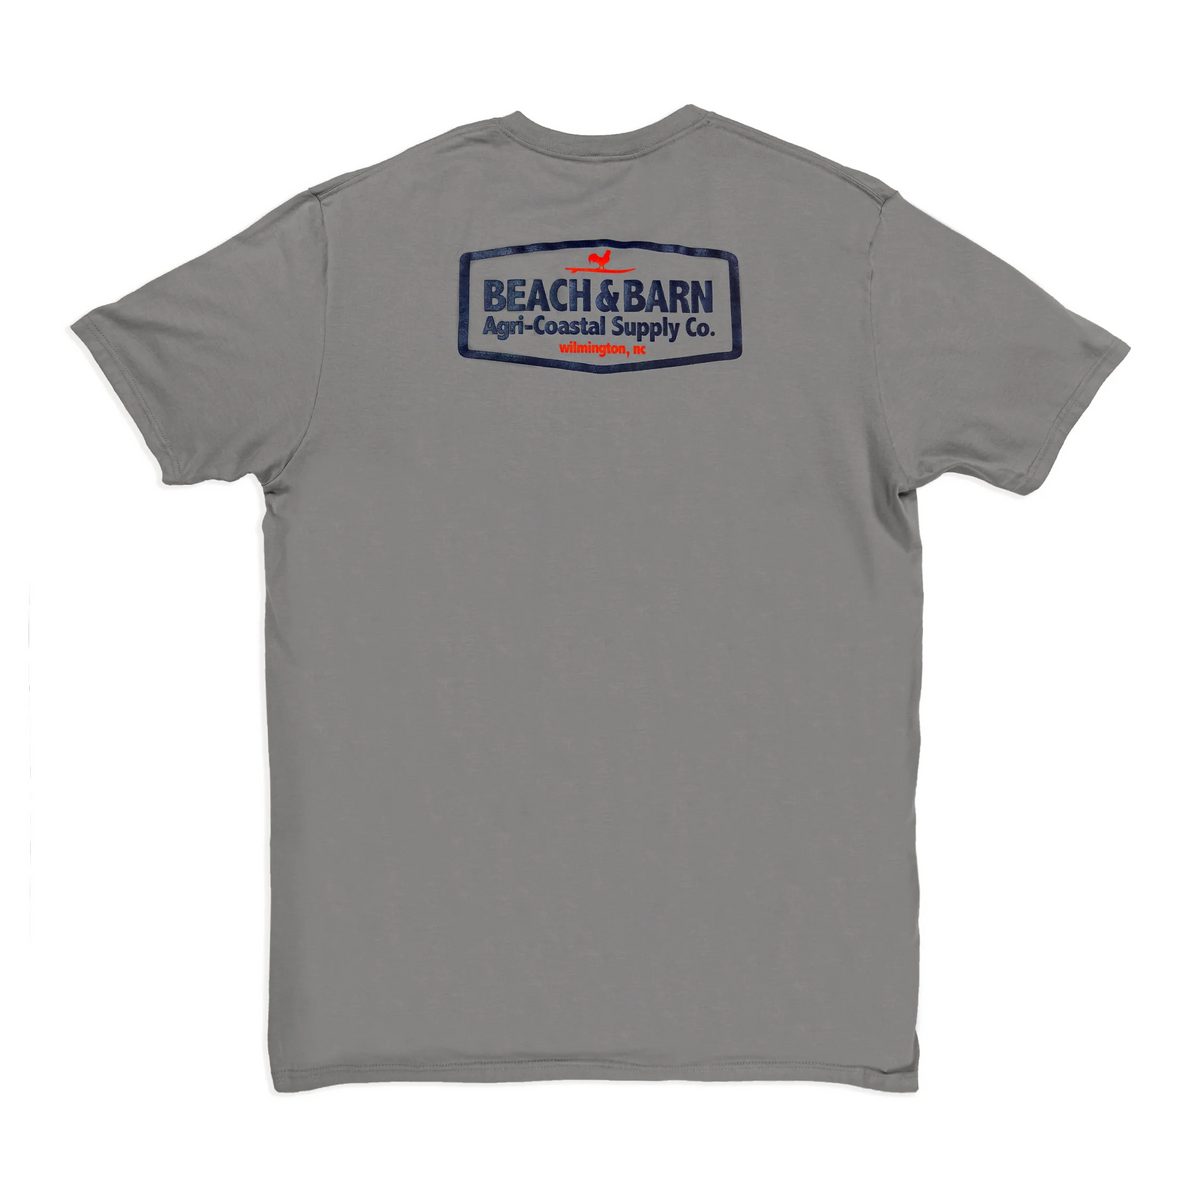 Sale - Agri-Coastal Tee Shirt